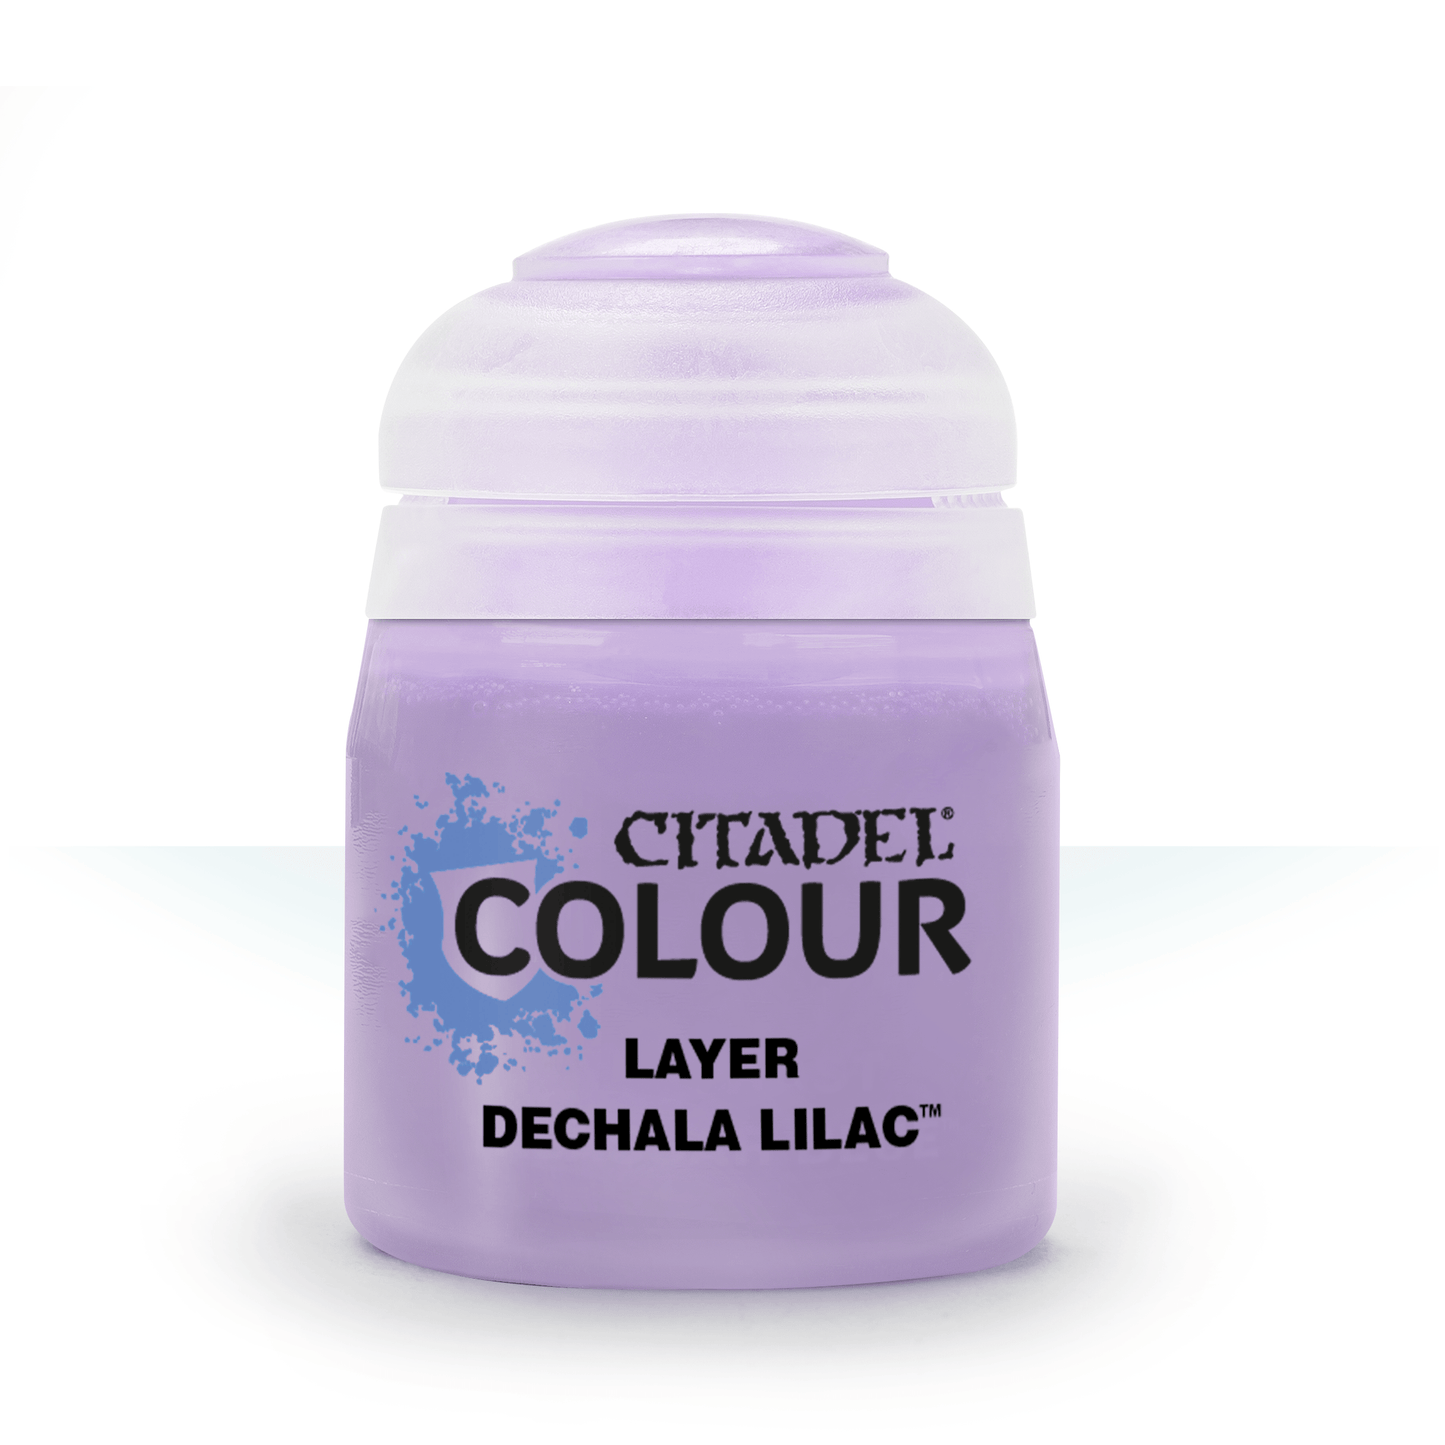 Citadel Colour - Dechala Lilac Layer Paint